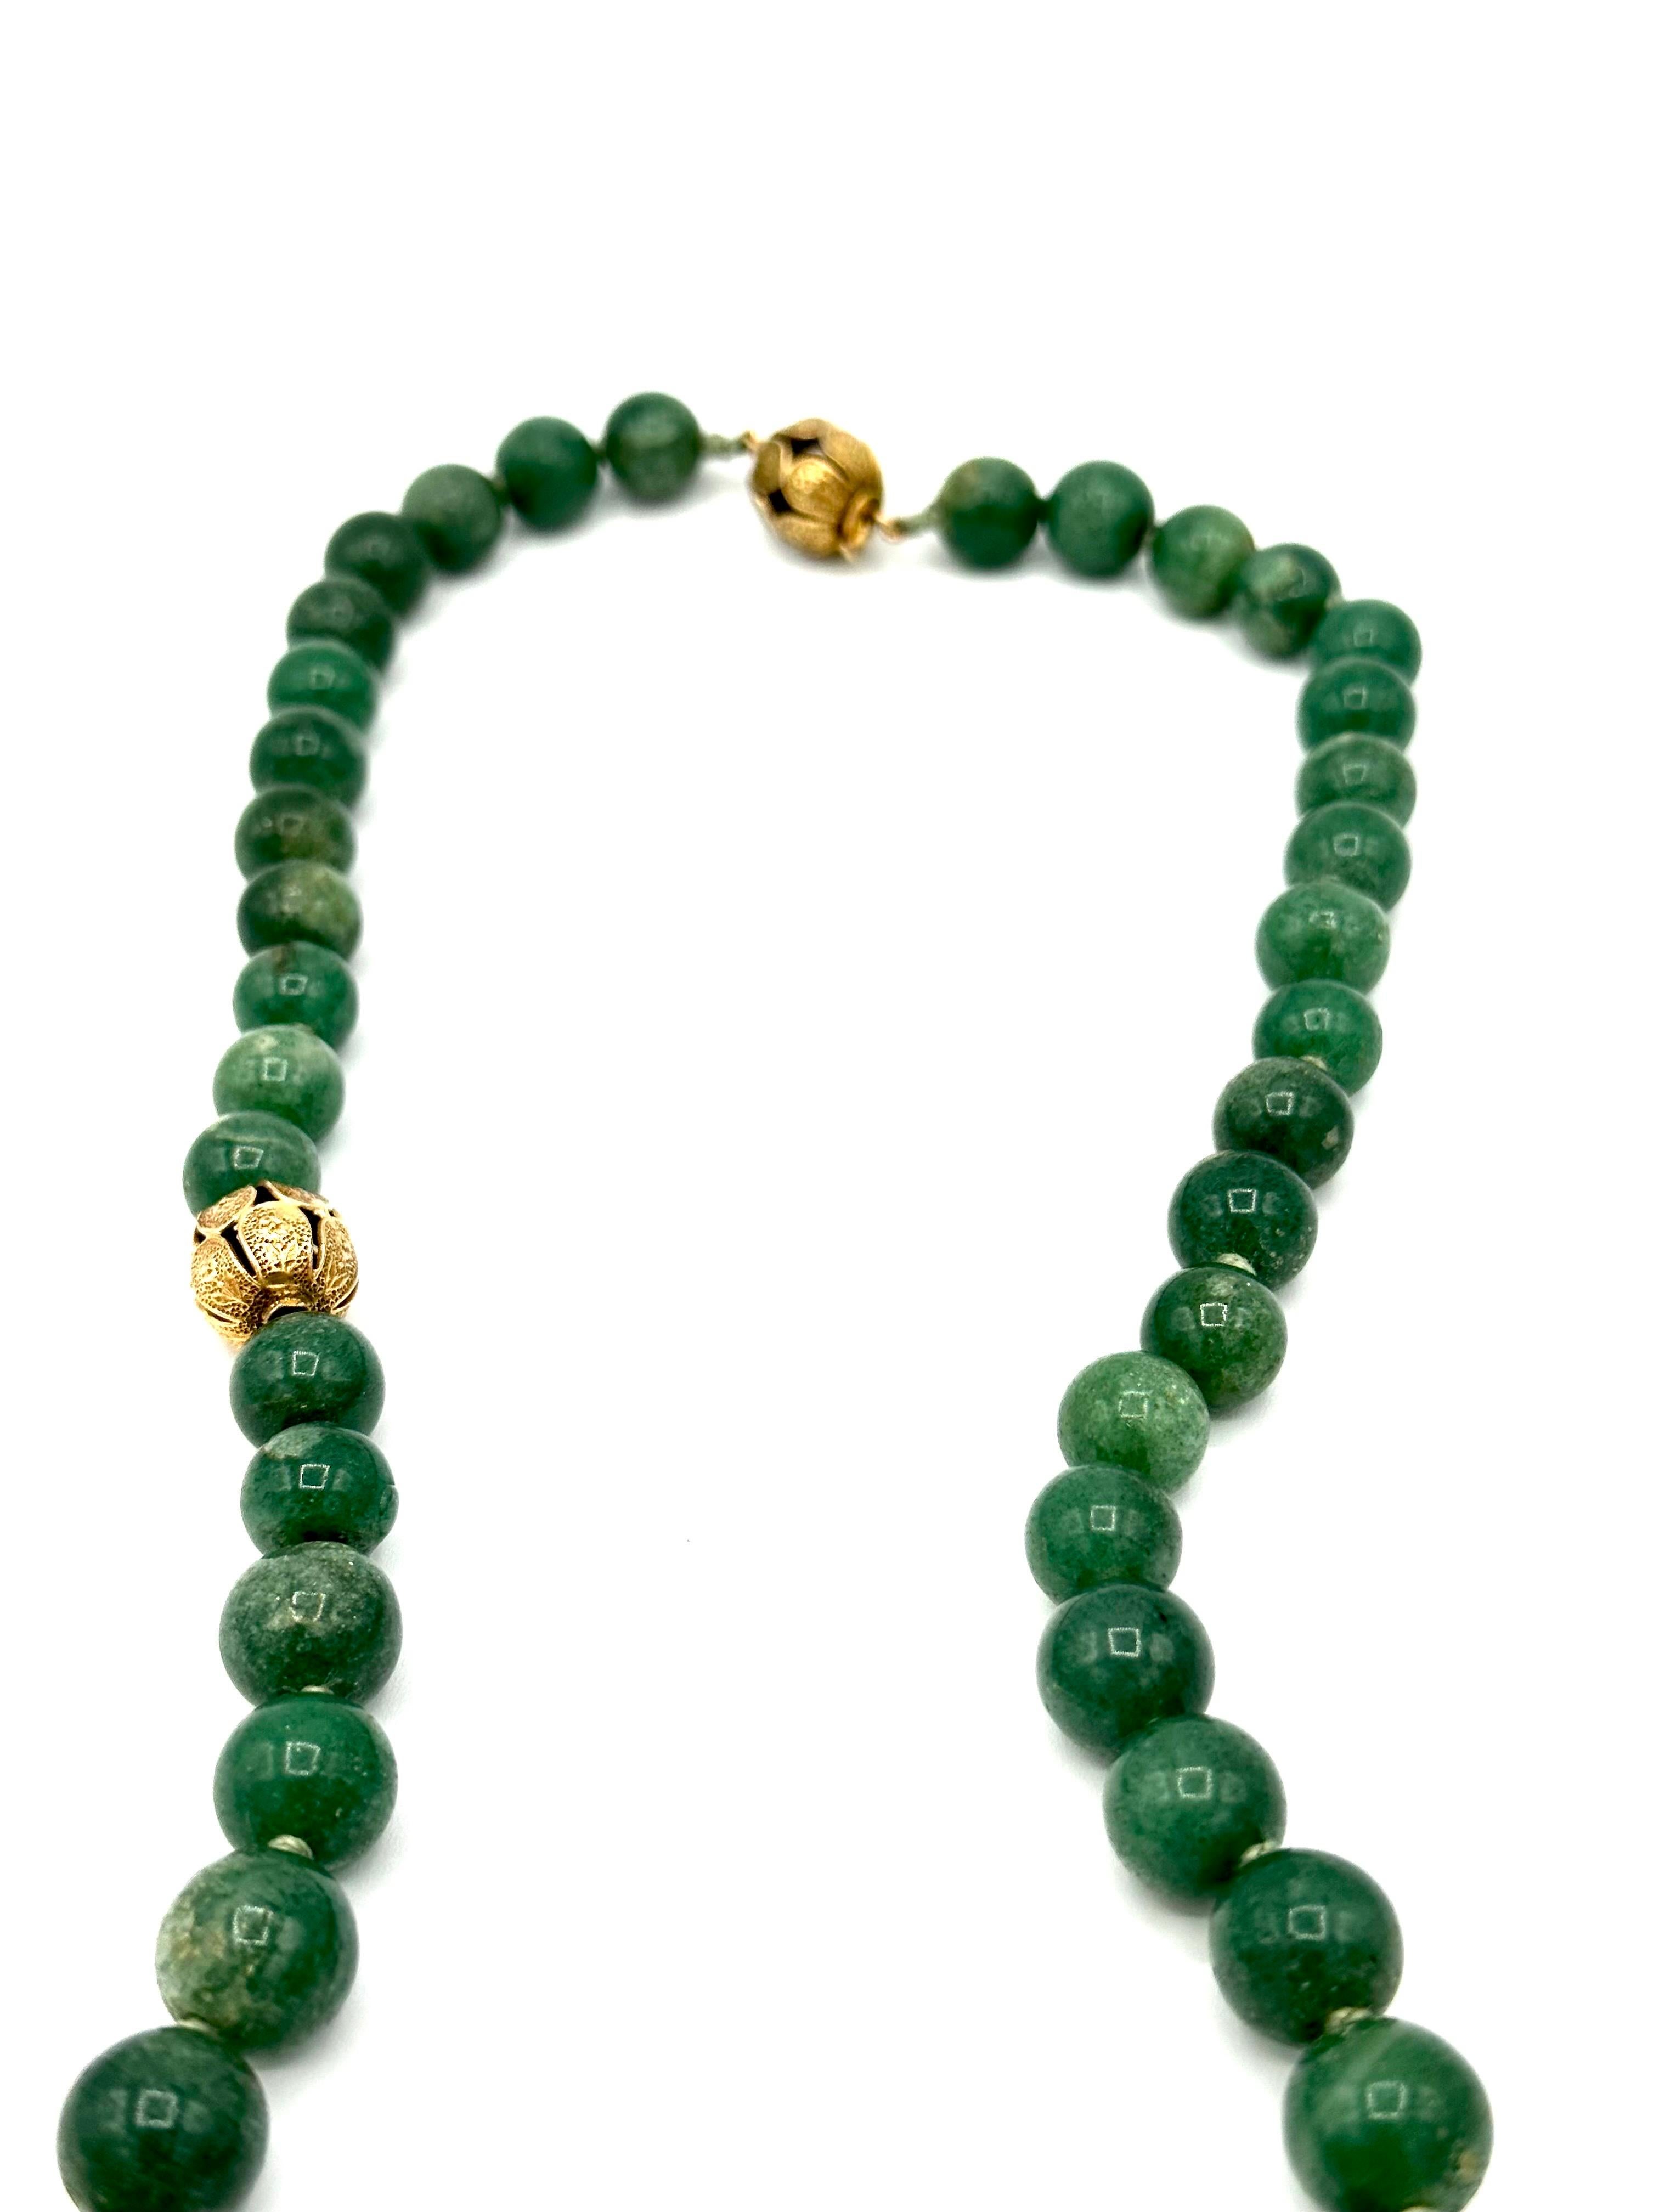 Eine selten zu findende lange Perlenkette aus Aventurin, entworfen von Seaman Schepps.  Die Aventurin-Perlen sind durch handgefertigte Rondellen aus 14-karätigem Gelbgold getrennt, die florale Muster darstellen.  Die Halskette verfügt über eine sehr